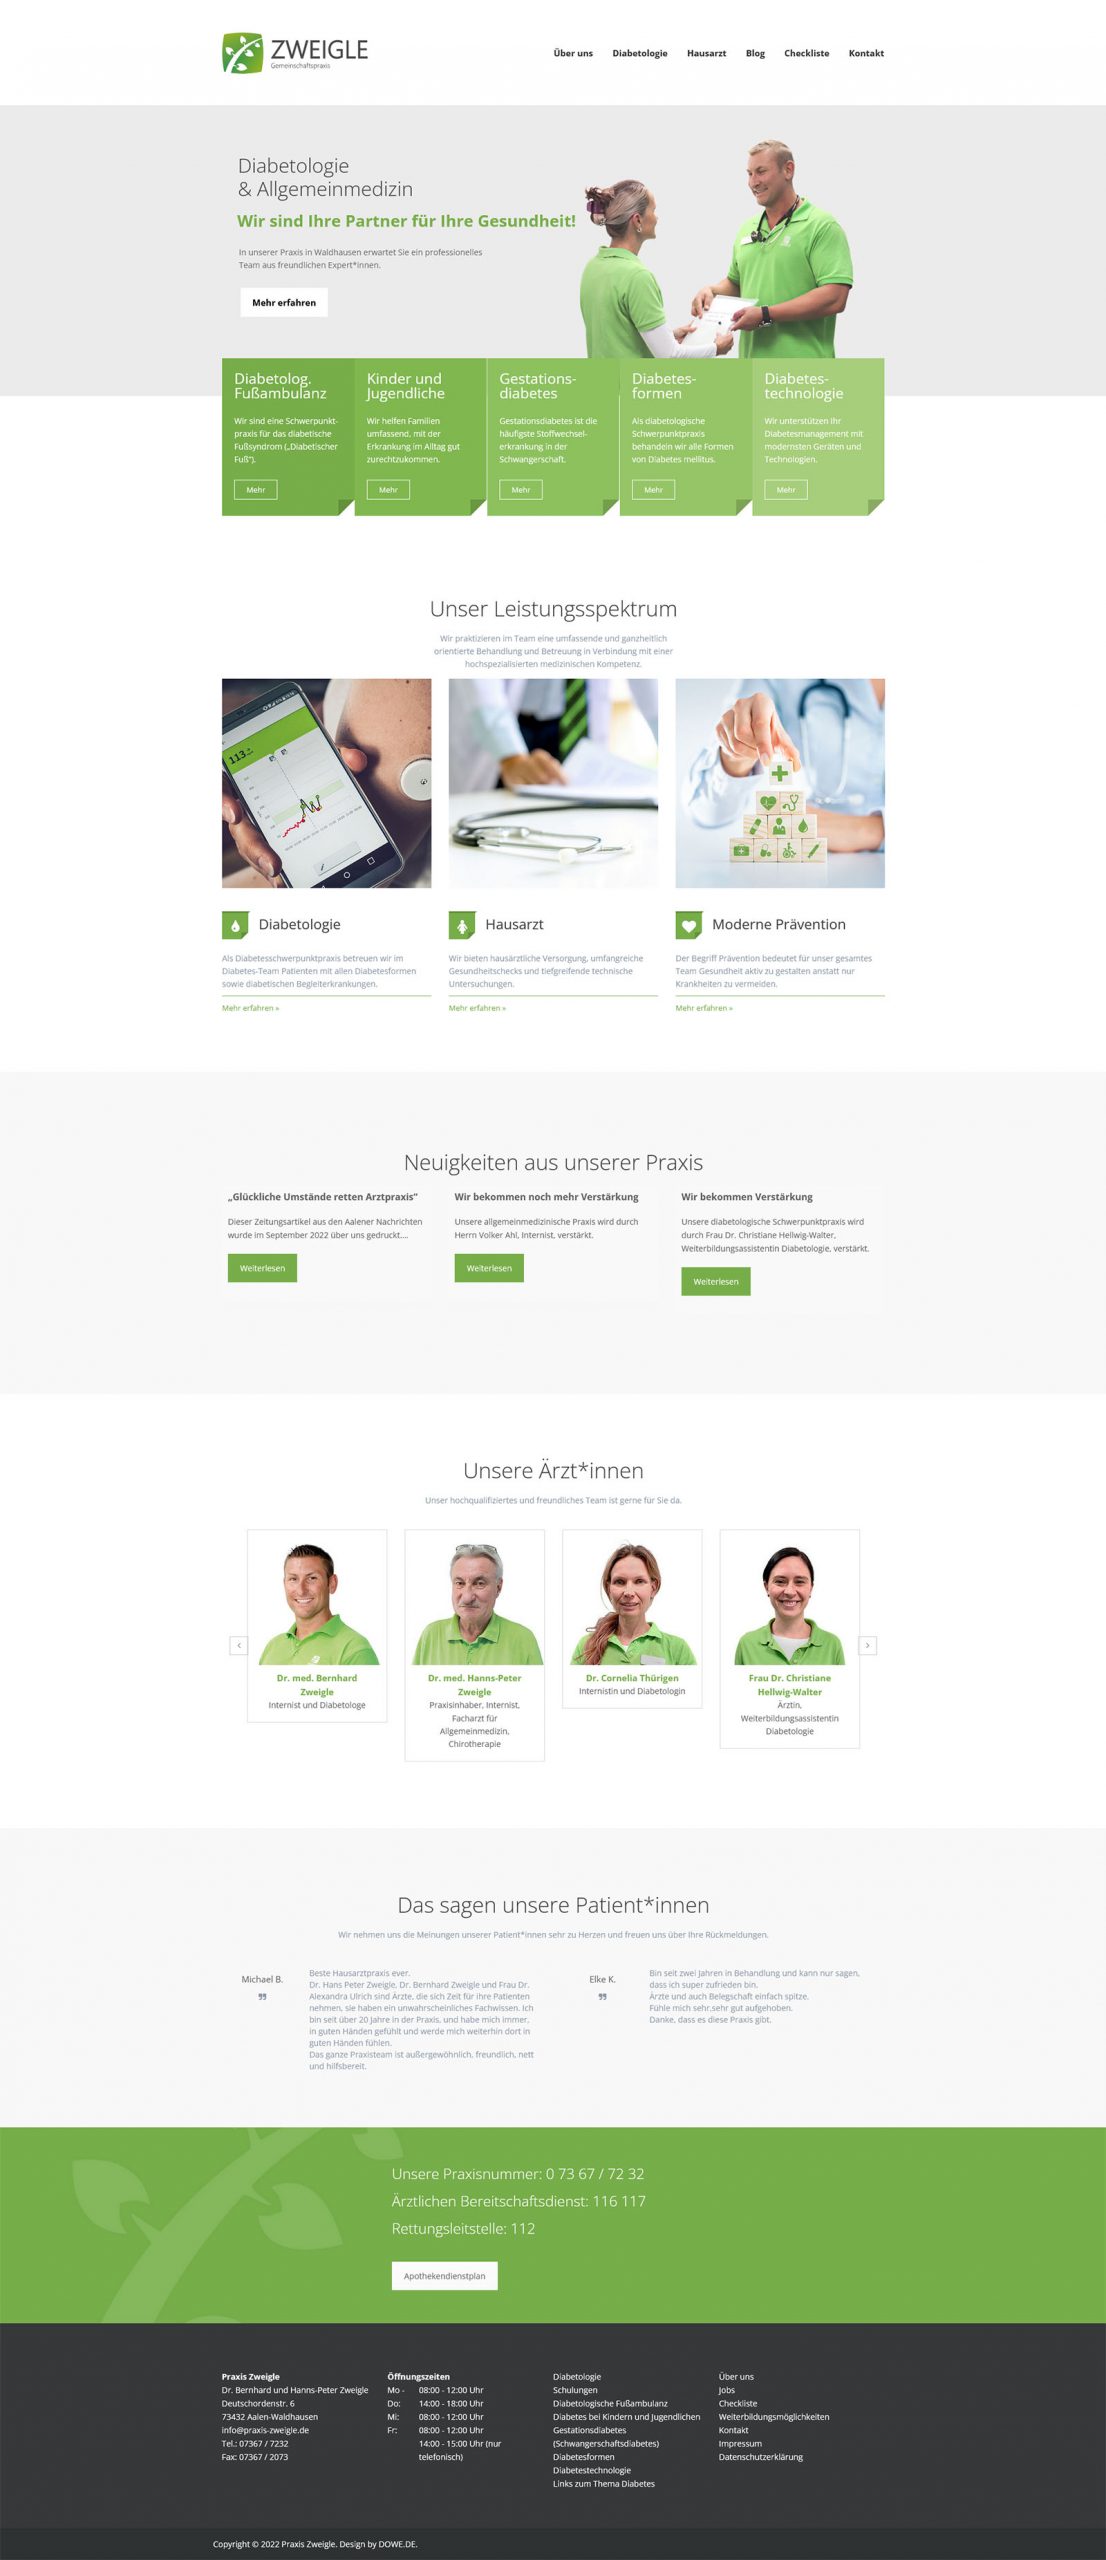 Screenshot der Webseite von Praxis Zweigle in Waldhausen - gestaltet von DOWE - Eine grün-weiß-graue Webseite. Im Kopfbereich sind das Ärztepaar zeigle bei einer Dokumentenübergabe zu sehen. Sie lächeln sich an. Darunter werden die Dienstleistungen der Praxis erläutert.